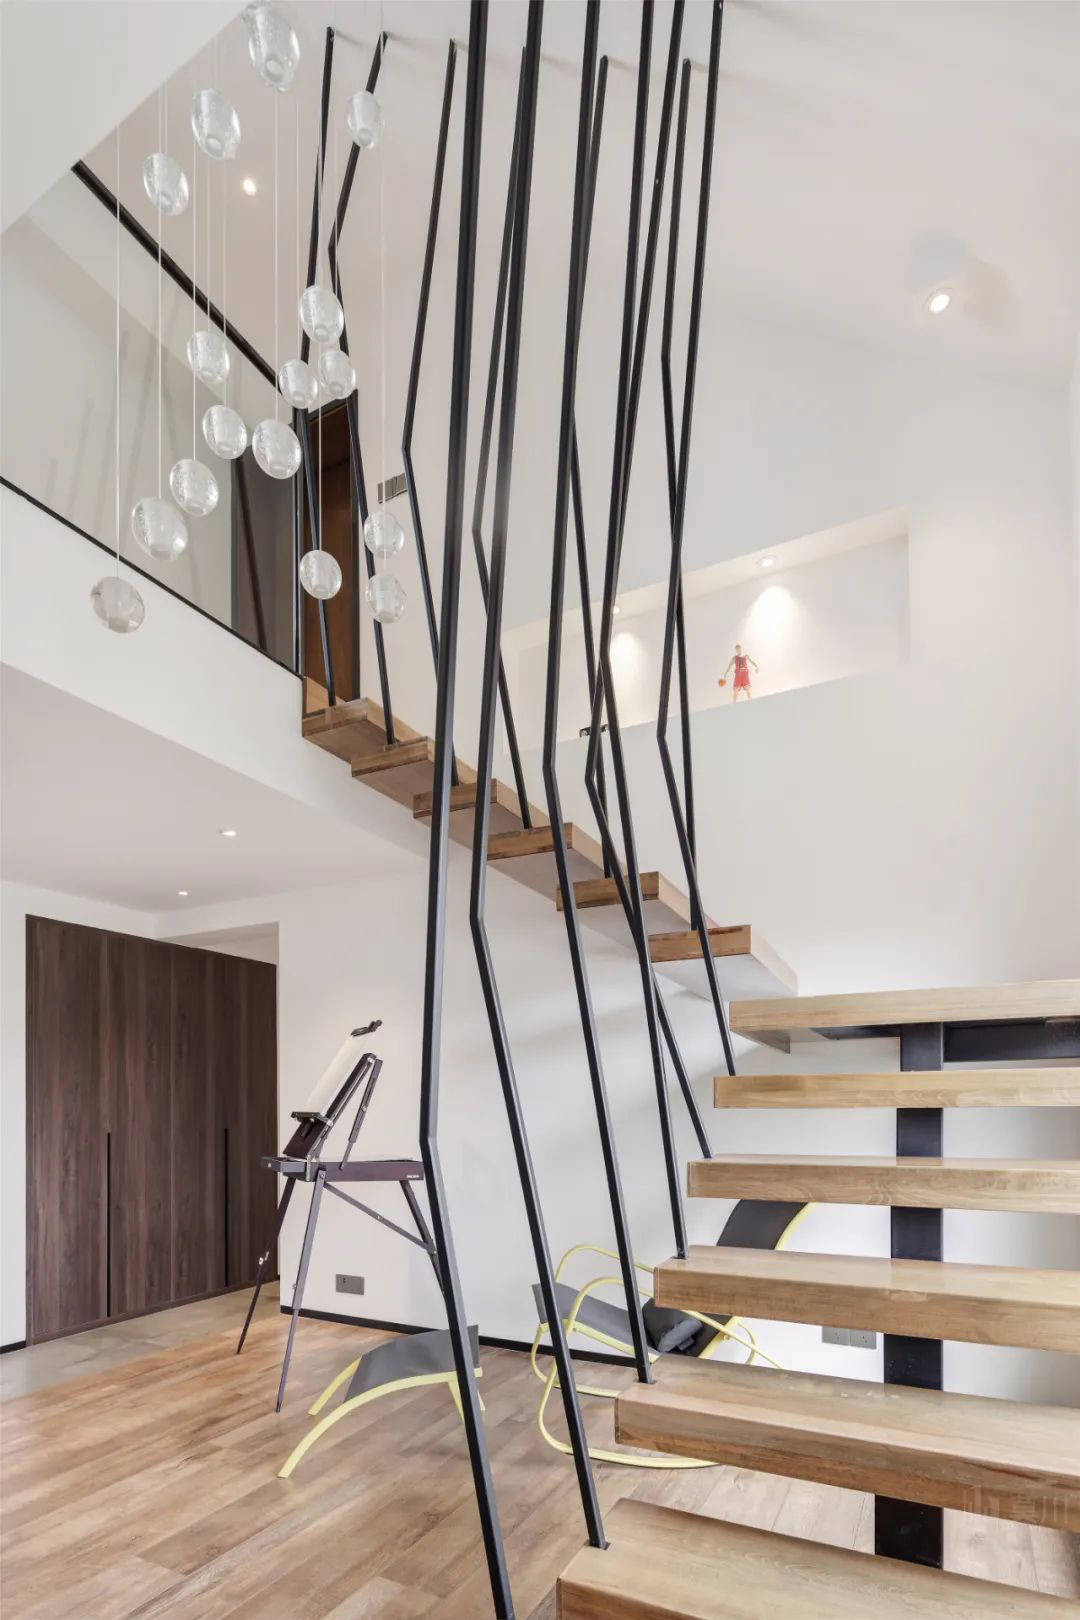 楼梯选用悬空的木质踏步梯规划,参与不规则形状的扶手,楼梯下安顿